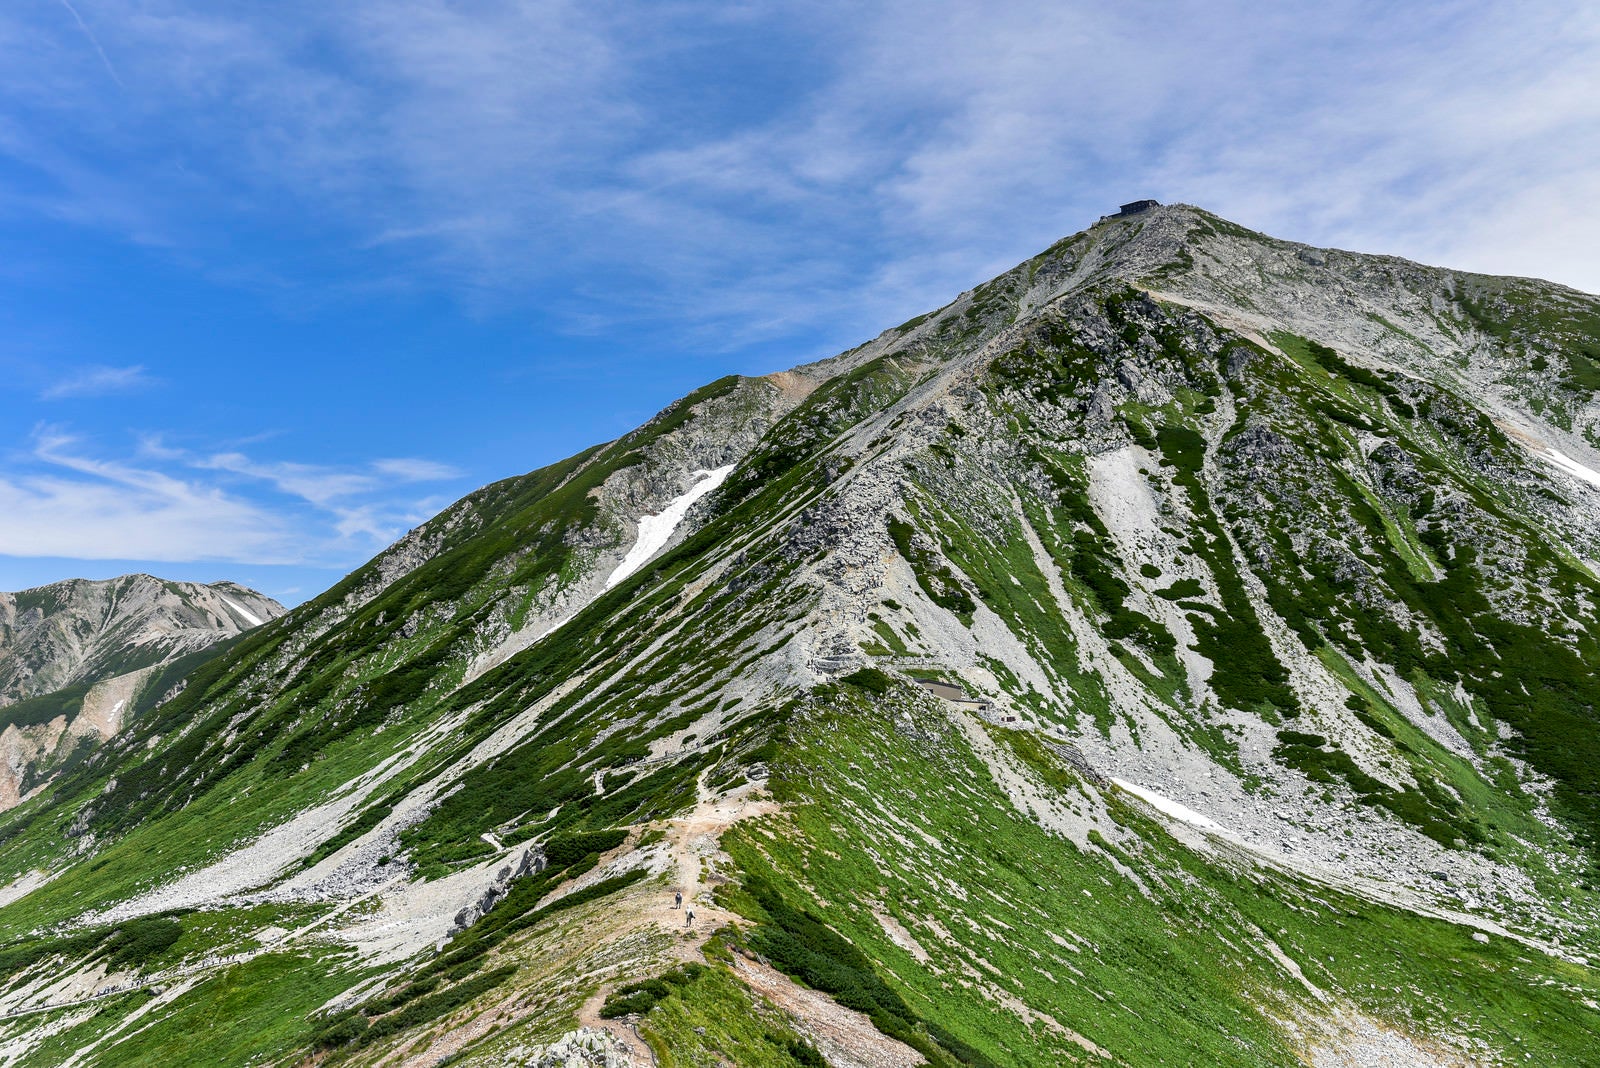 「浄土山鞍部から見上げる立山雄山の姿」の写真